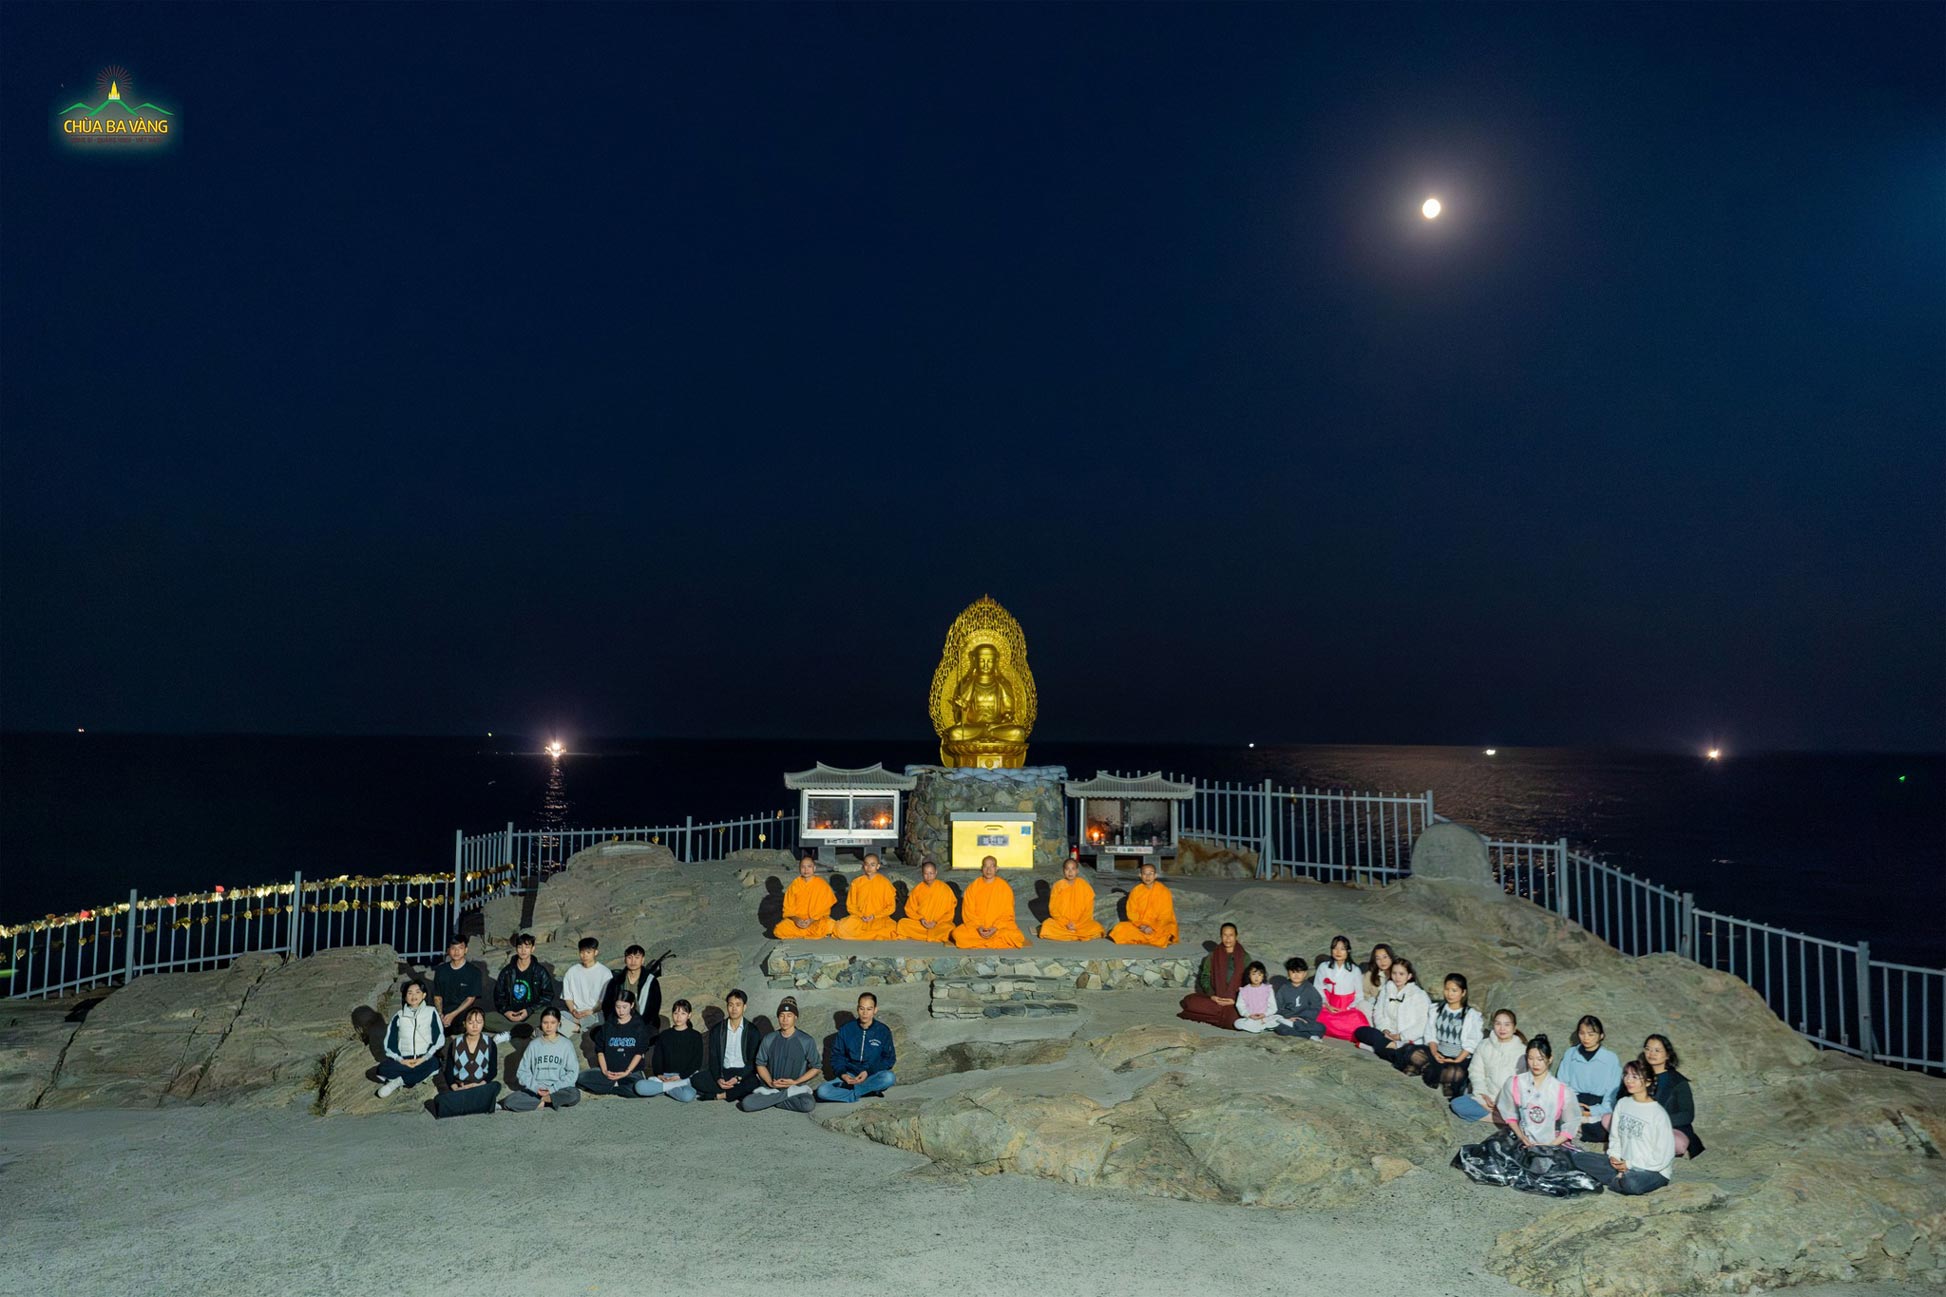 Tại chùa Đông Hải Long Cung, trăng trên trời tỏa sáng, sóng dưới biển rì rào, Sư Phụ cùng chư Tăng, Phật tử tọa thiền. Khung cảnh thật bình yên!